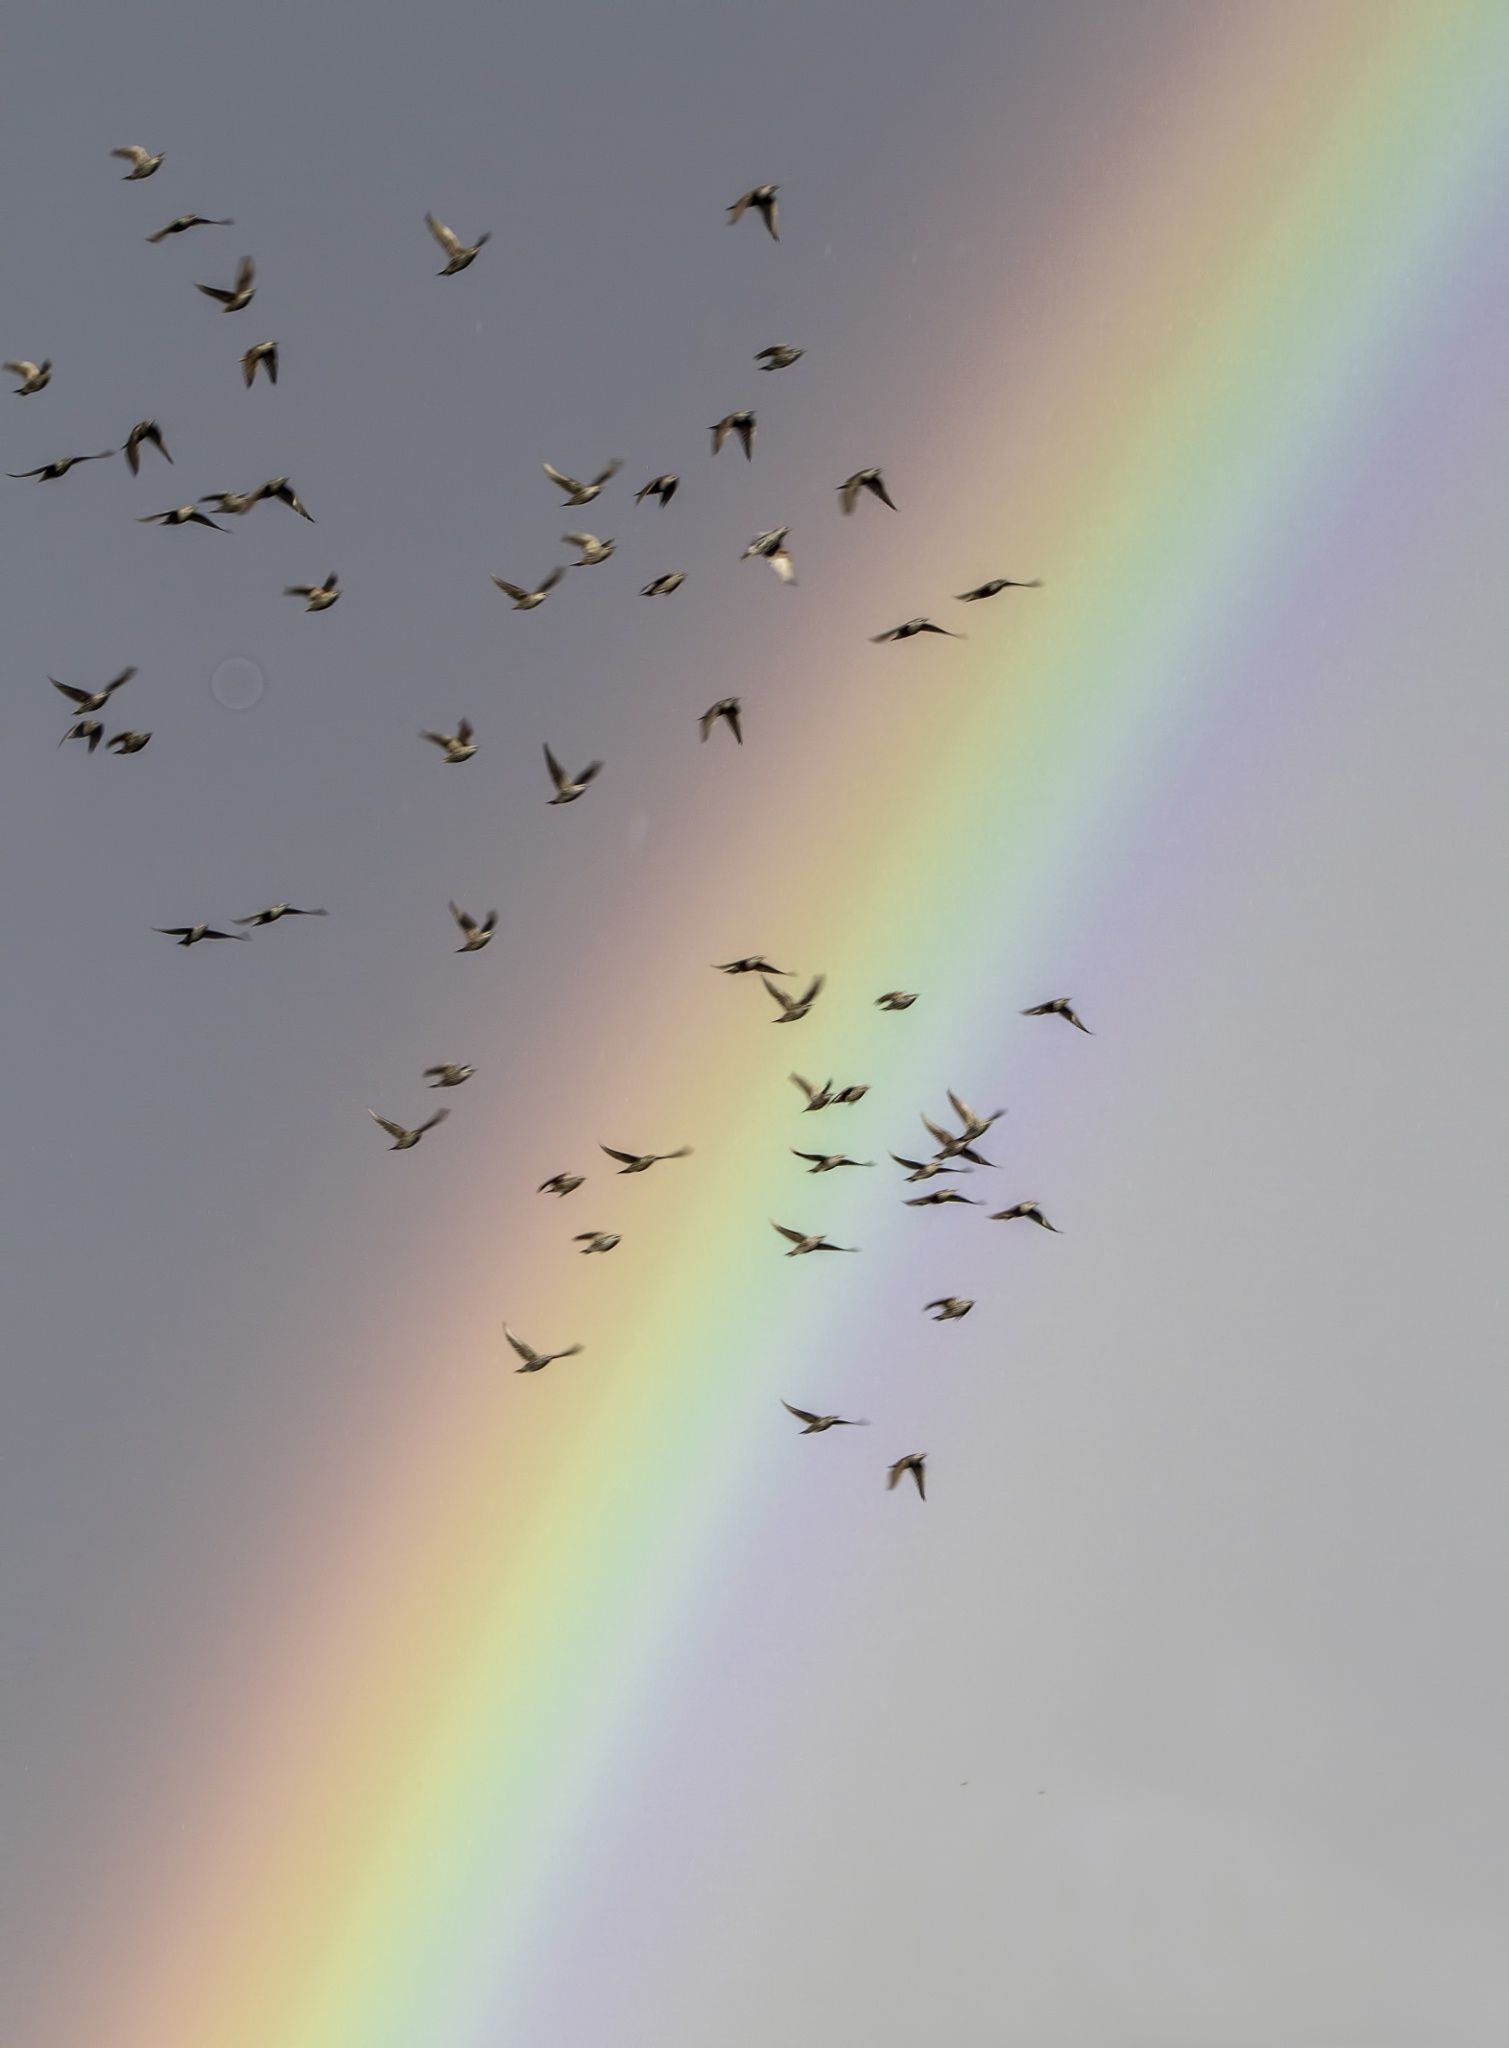 A flock of birds flying underneath the rainbow - 